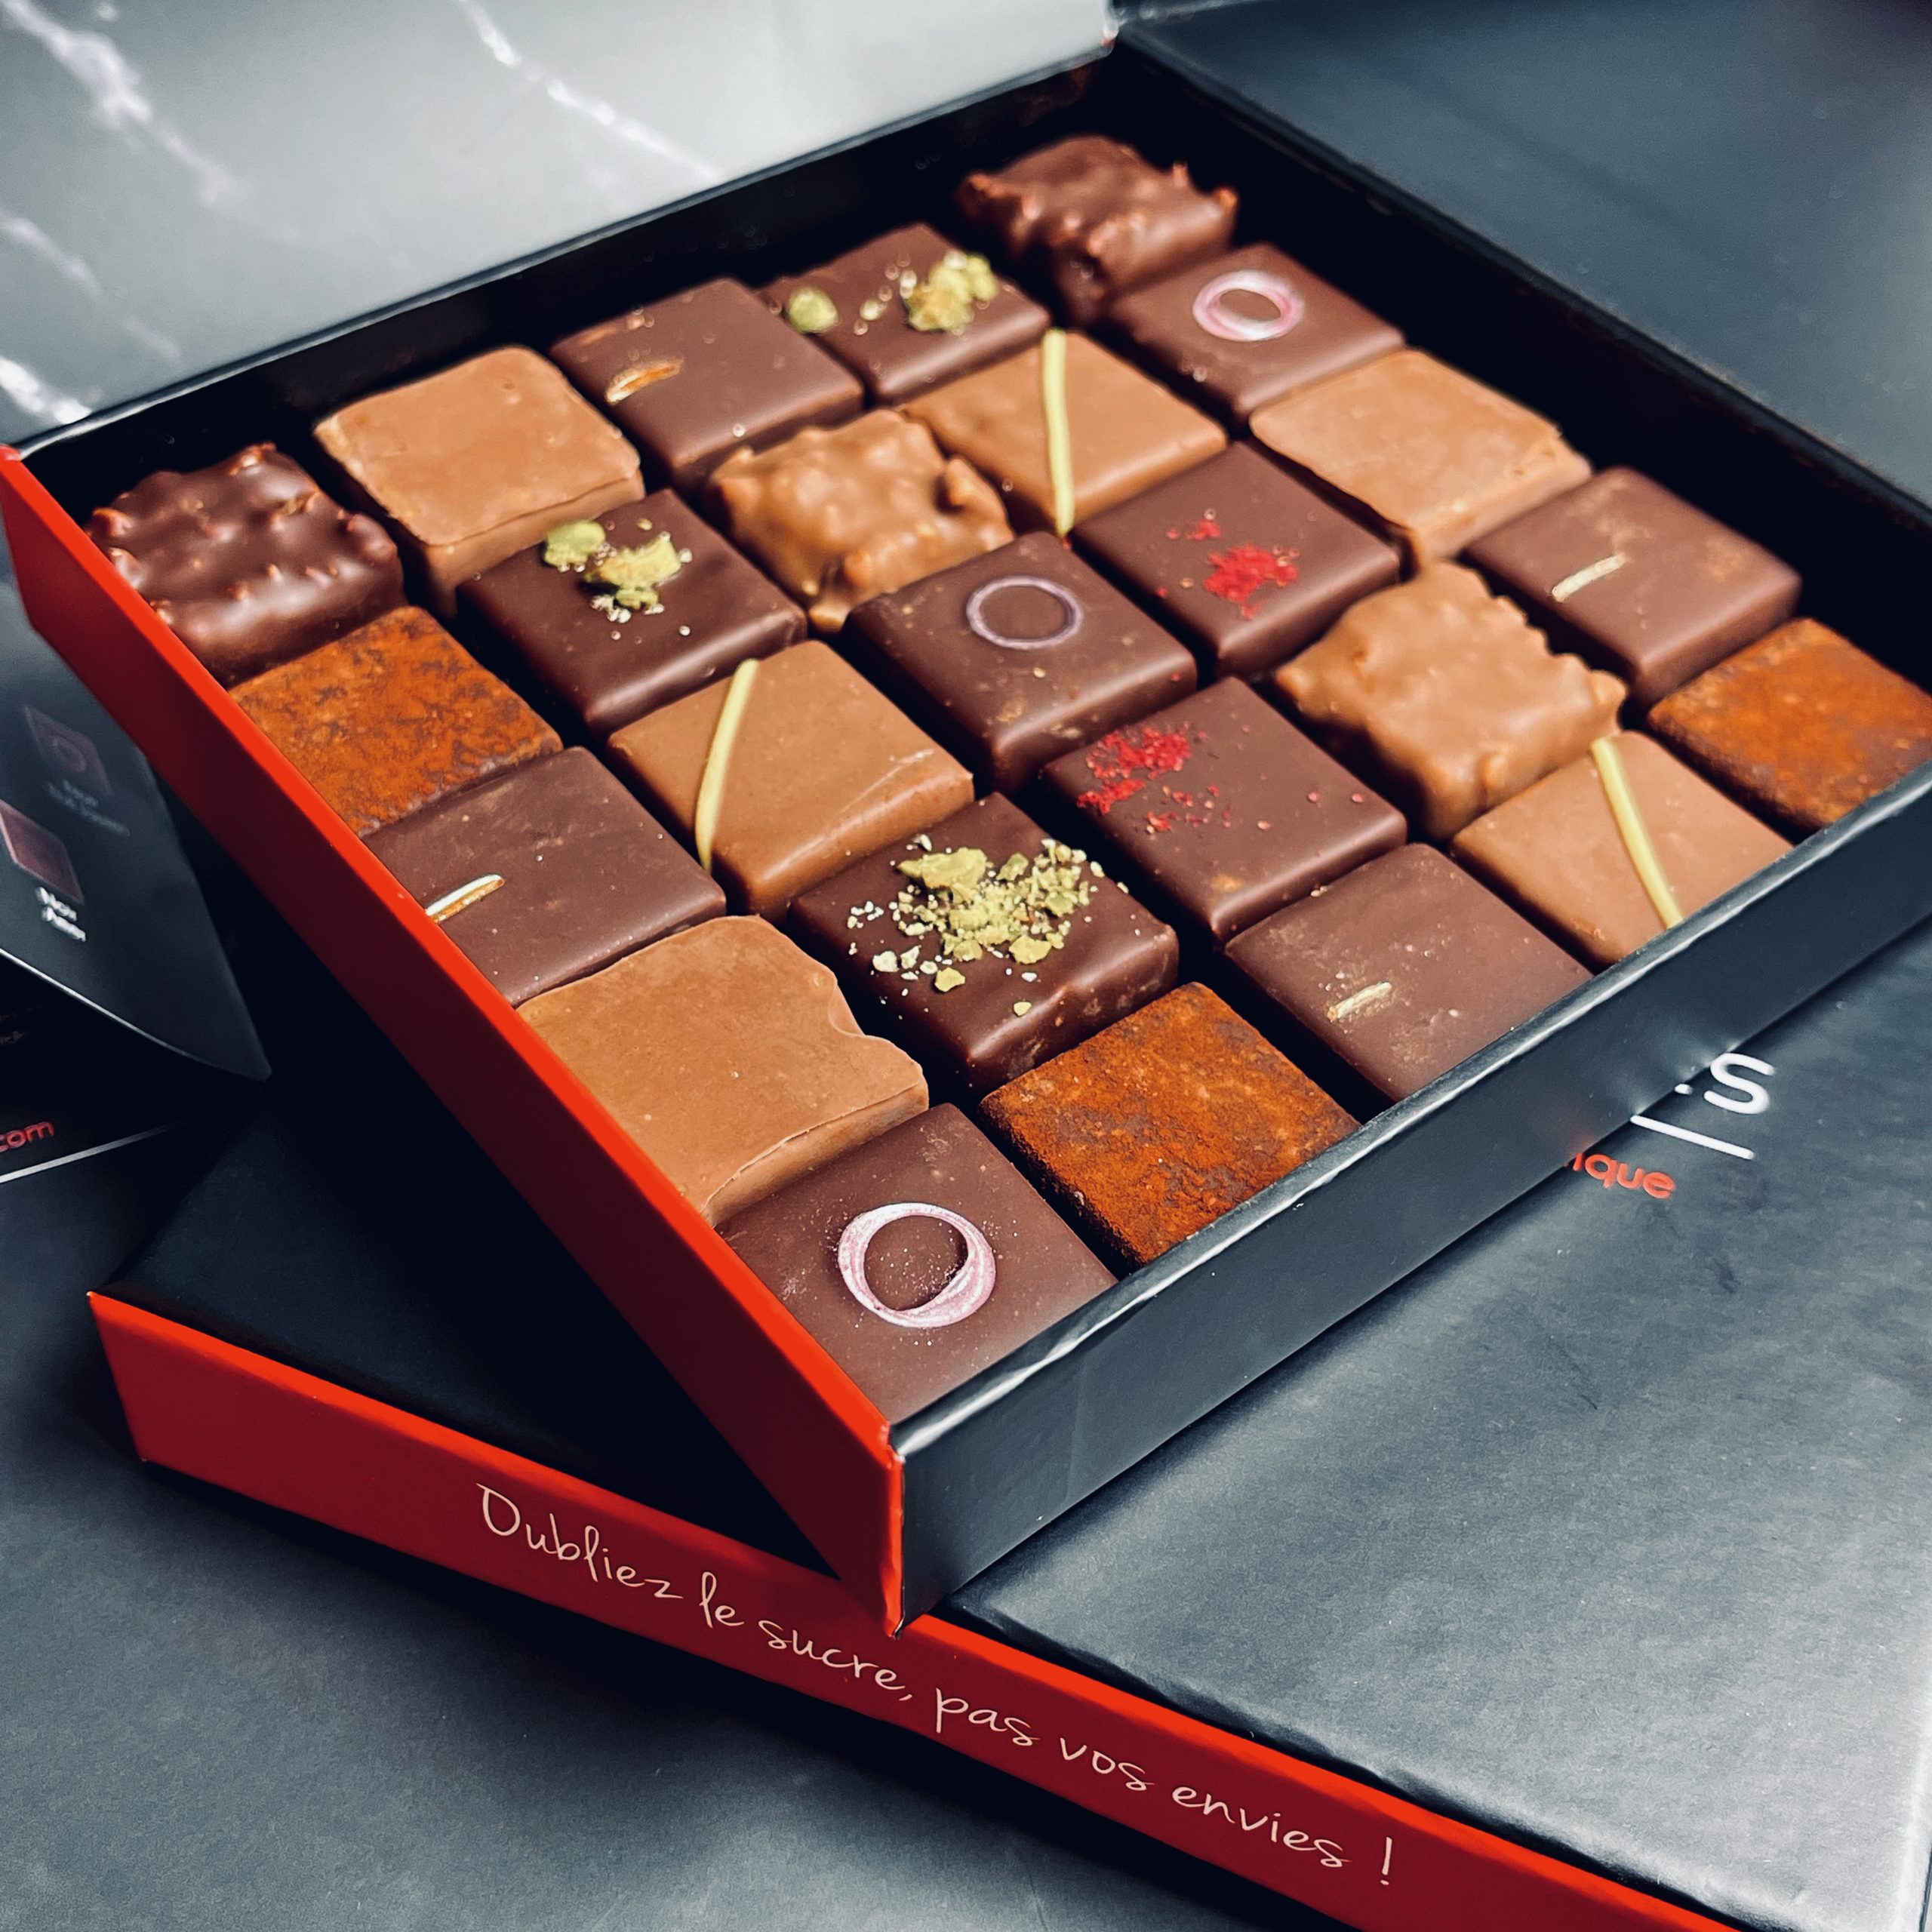 Coffret Découverte Ganaches et Pralinés – 9 chocolats - Pâtisseries  Chocolats IG Bas - Les Belles Envies